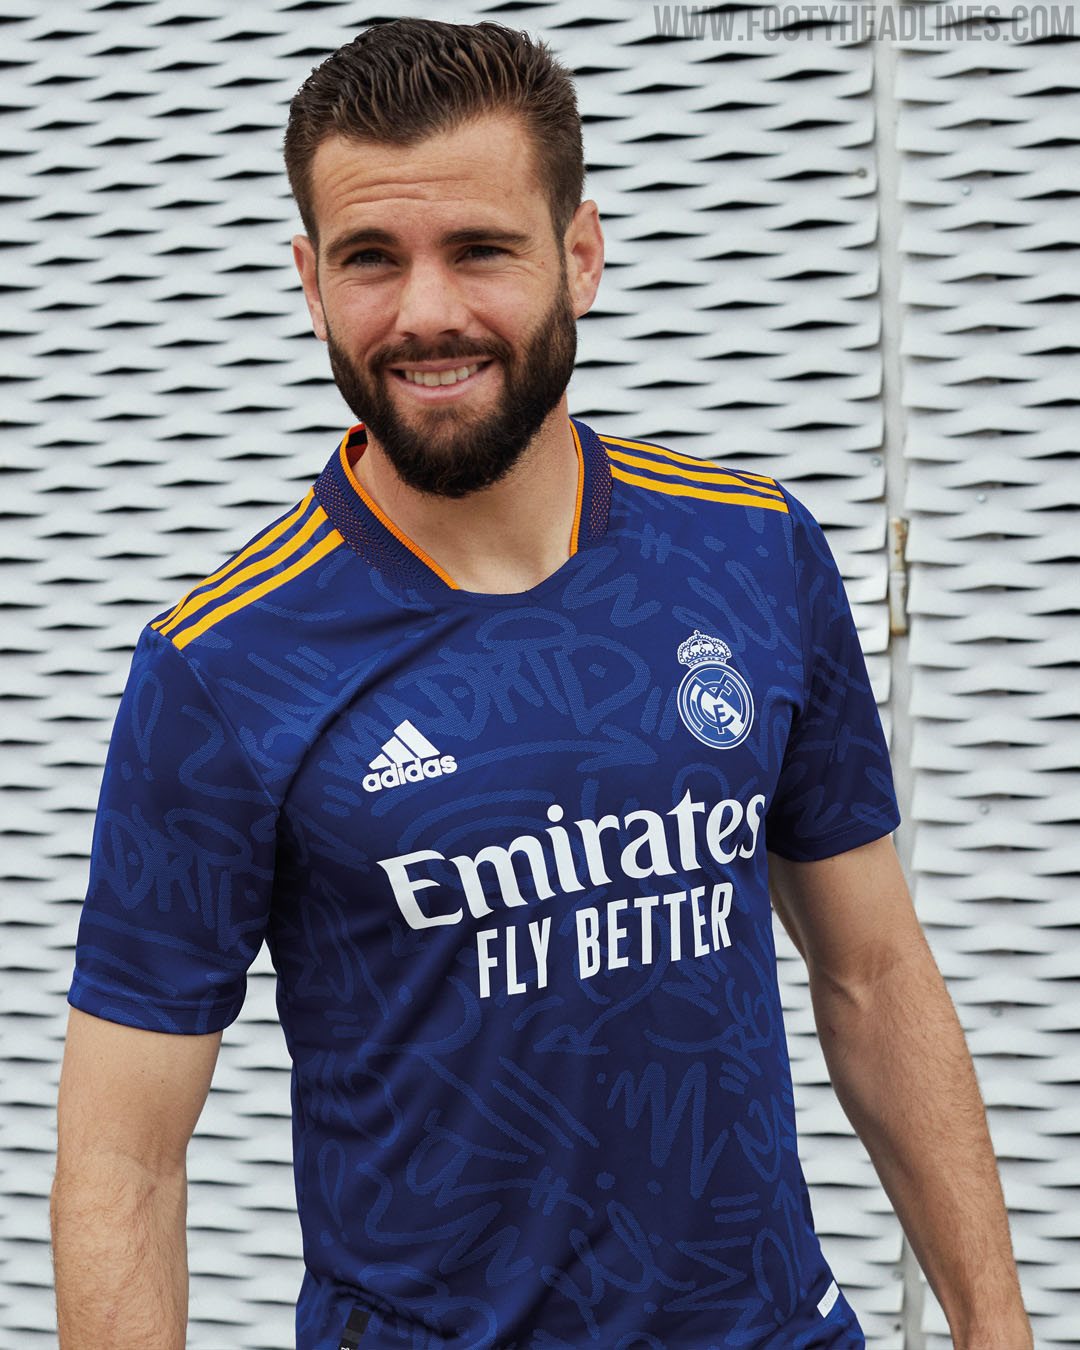 kleuring Pastoor holte Real Madrid 21-22 Away Kit Released - Footy Headlines